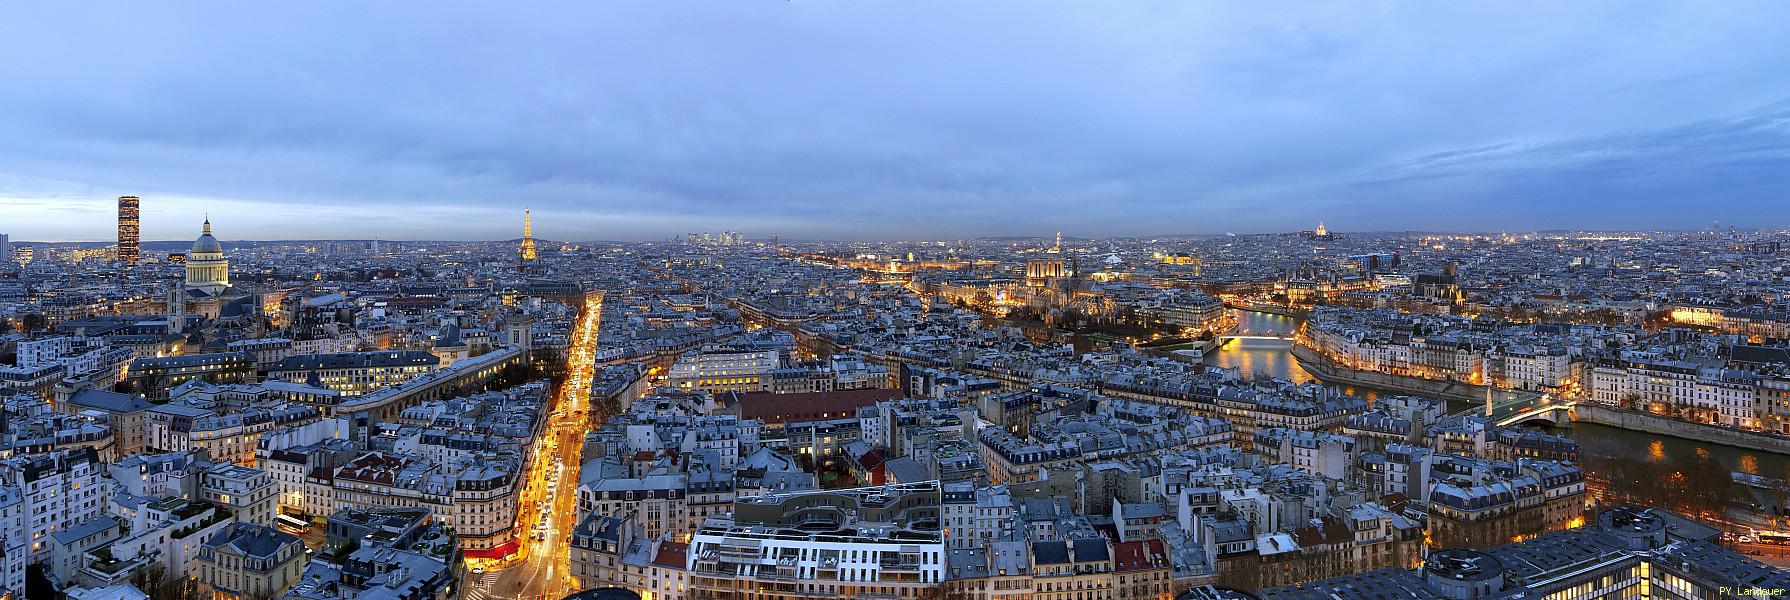 Paris vu d'en haut, tour Zamansky